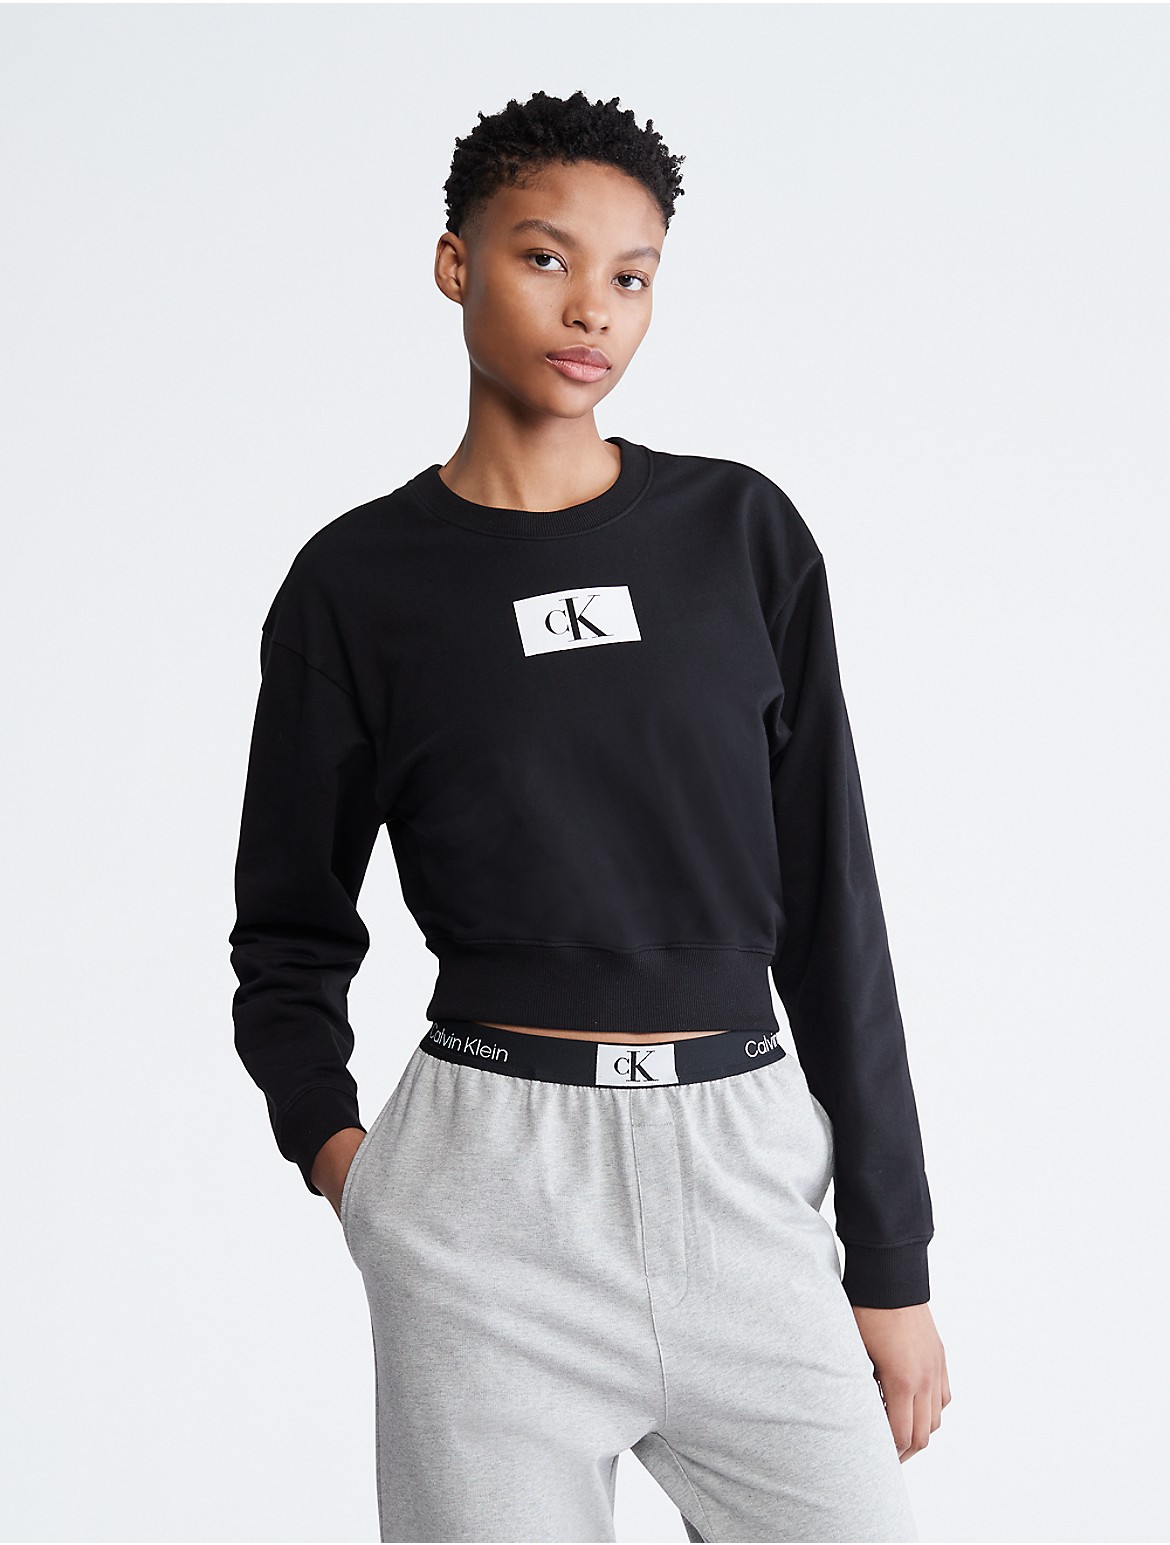 Calvin Klein Women's Calvin Klein 1996 Lounge Sweatshirt - Black - S